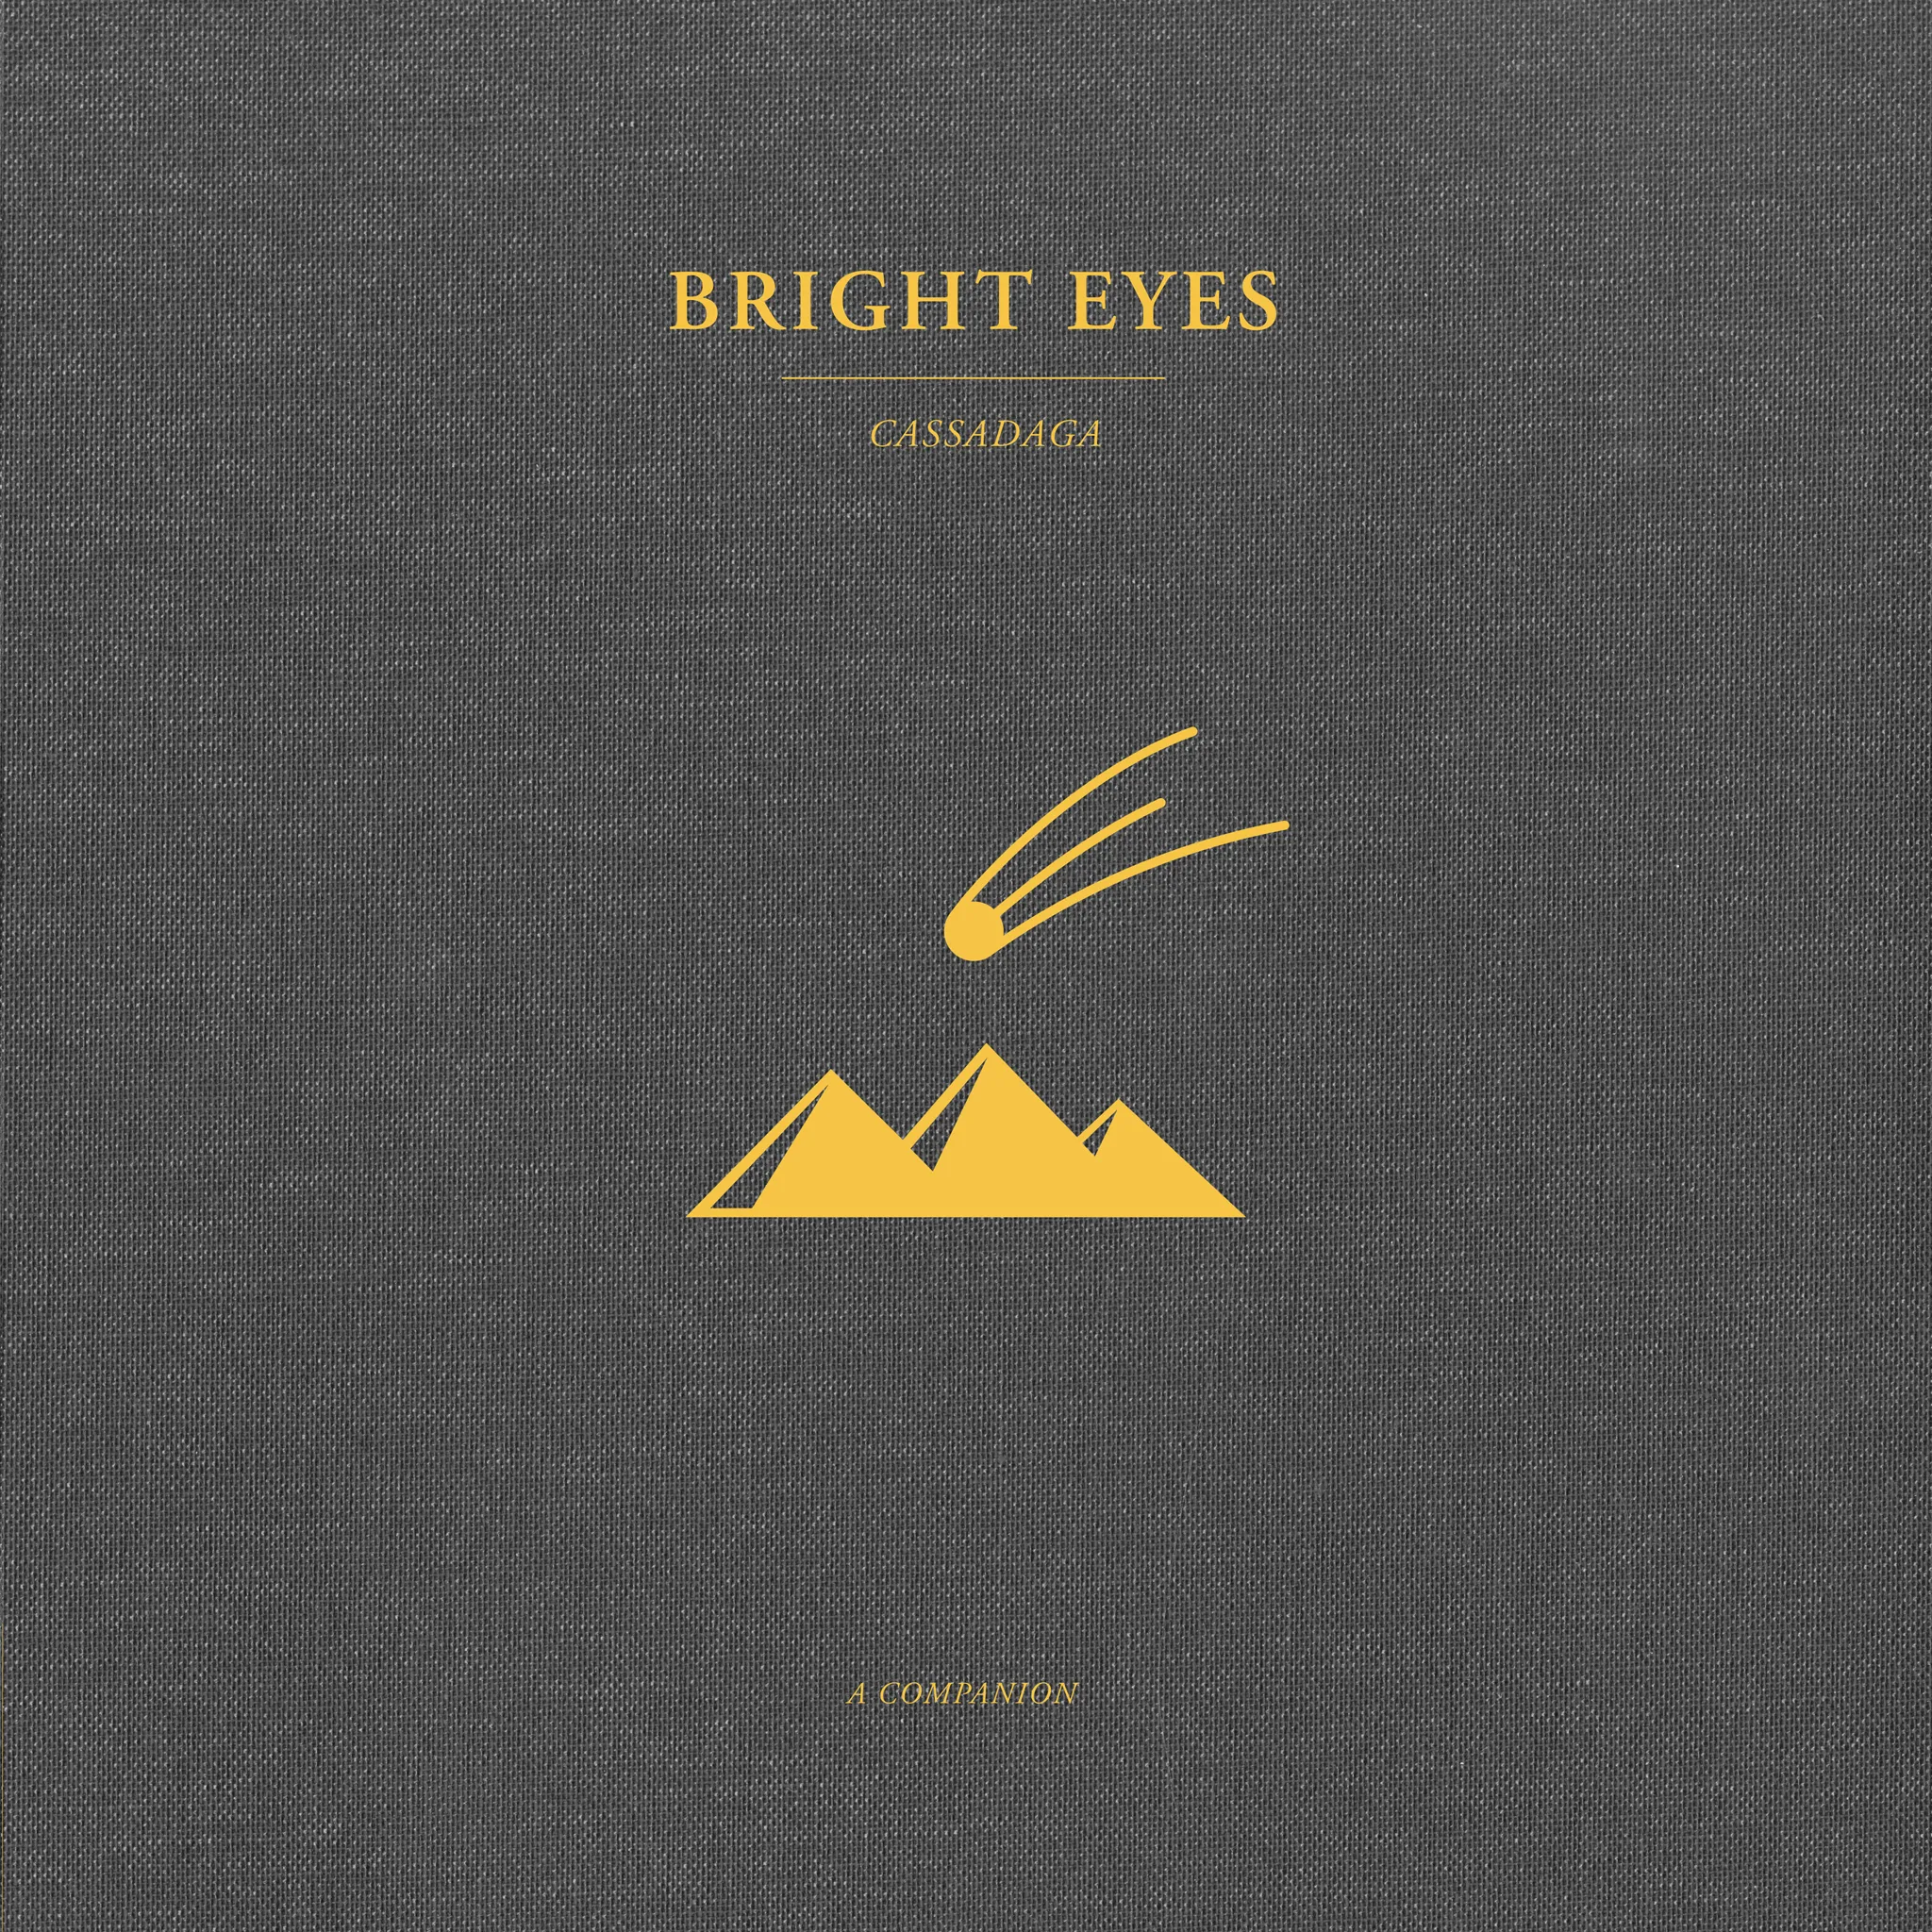 <strong>Bright Eyes - Cassadaga: A Companion</strong> (Vinyl LP - gold)